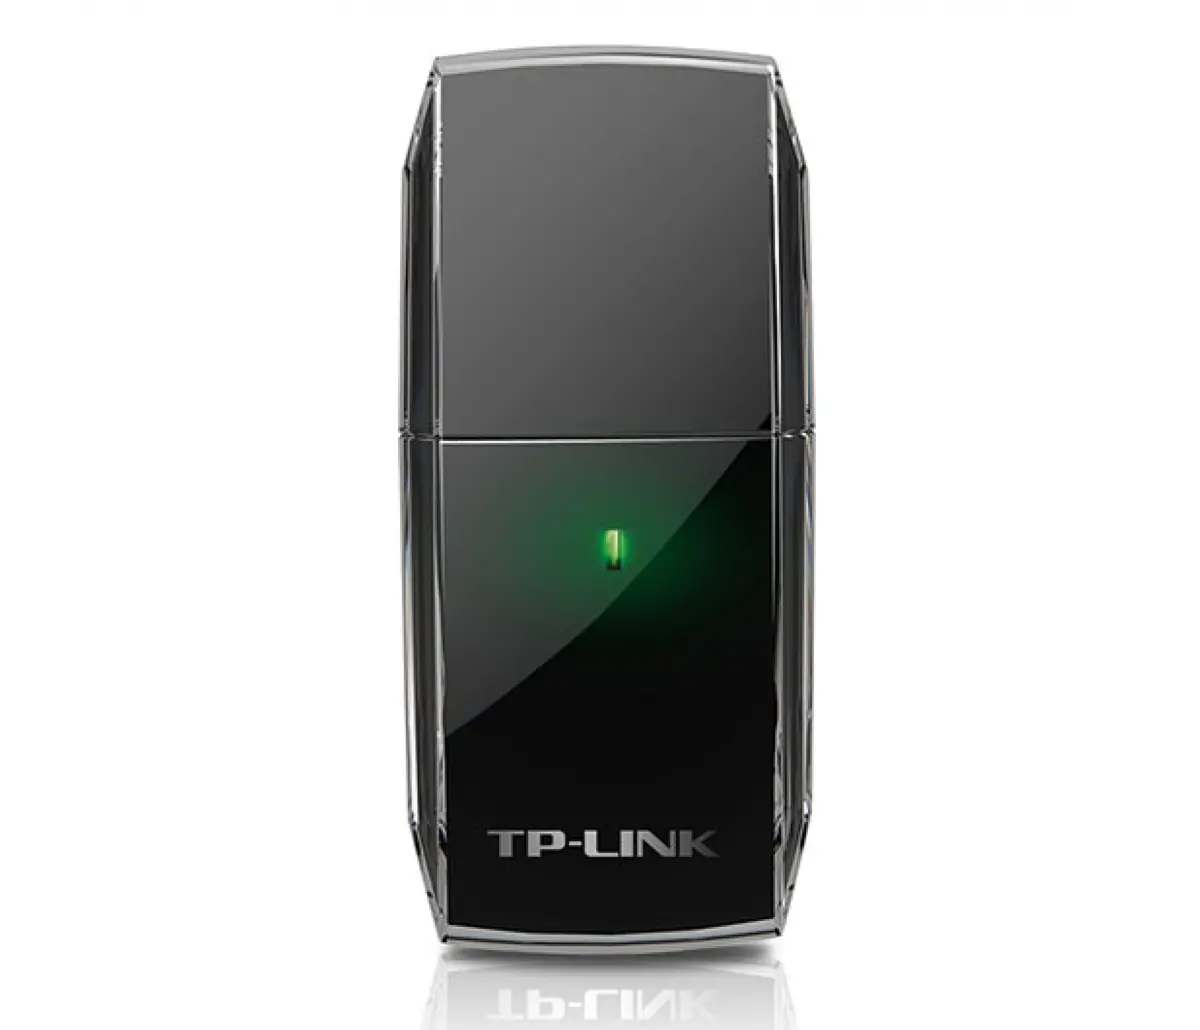 Безжичен адаптер TP-LINK Archer T2U, AC600, двулентов, USB 2.0, вградена антена - image 2